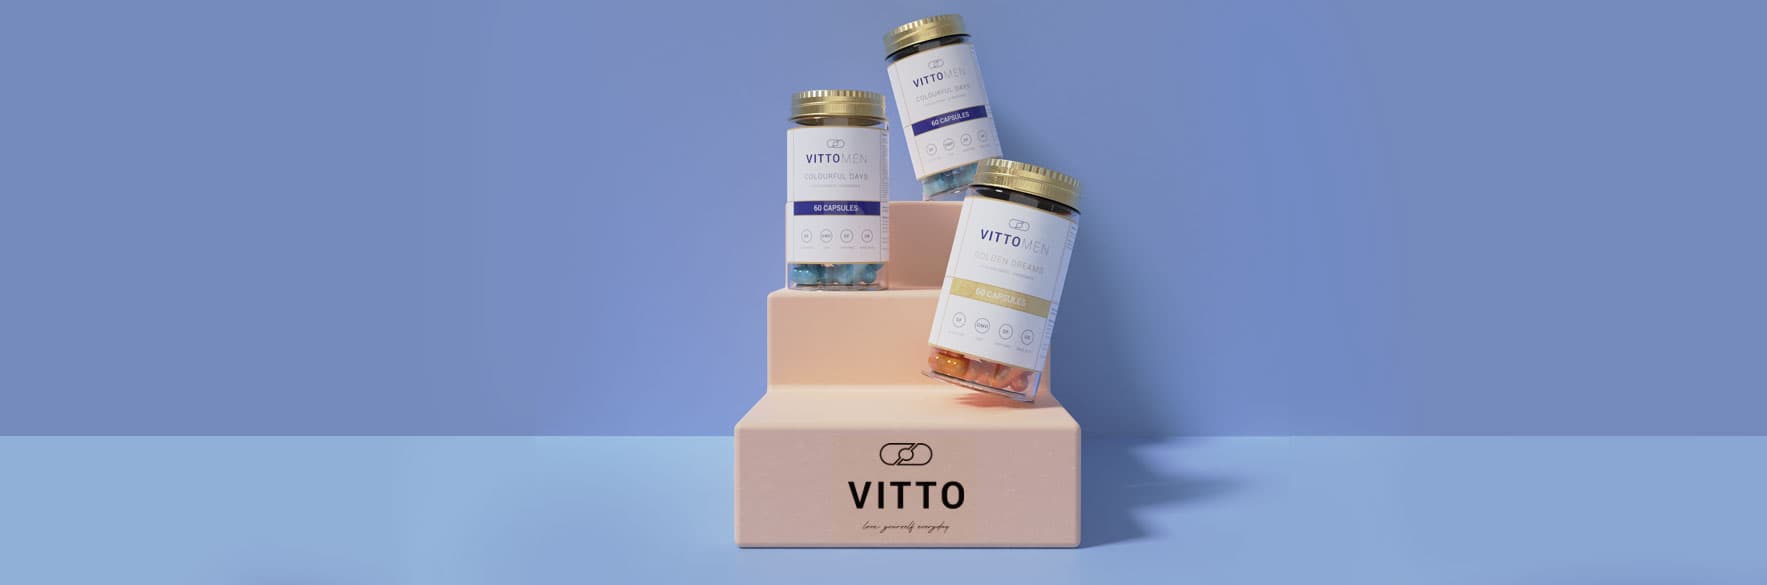 محصولات ویتو VITTO